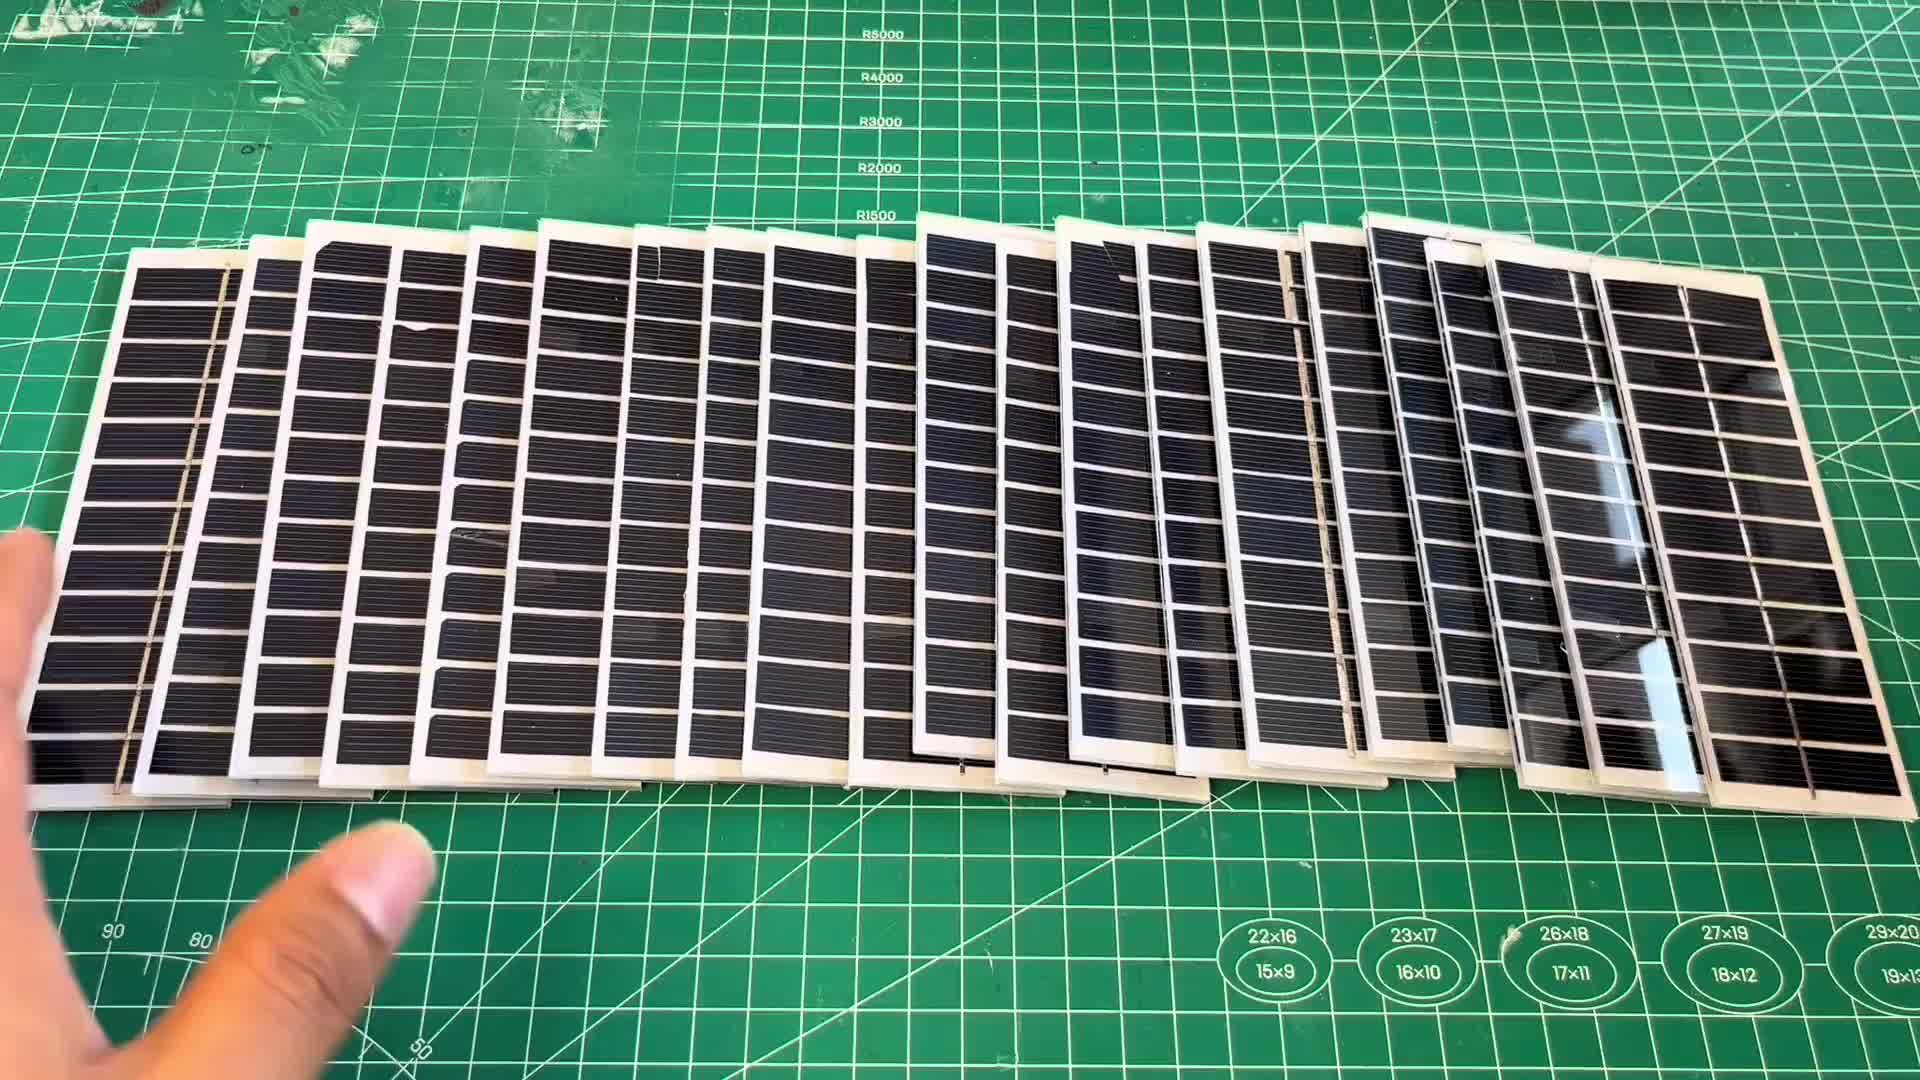 20块小太阳能板，实现手机充电自由，再想收我电费是不可能的了#新能源 #diy #太阳能发电 #太阳能充电  